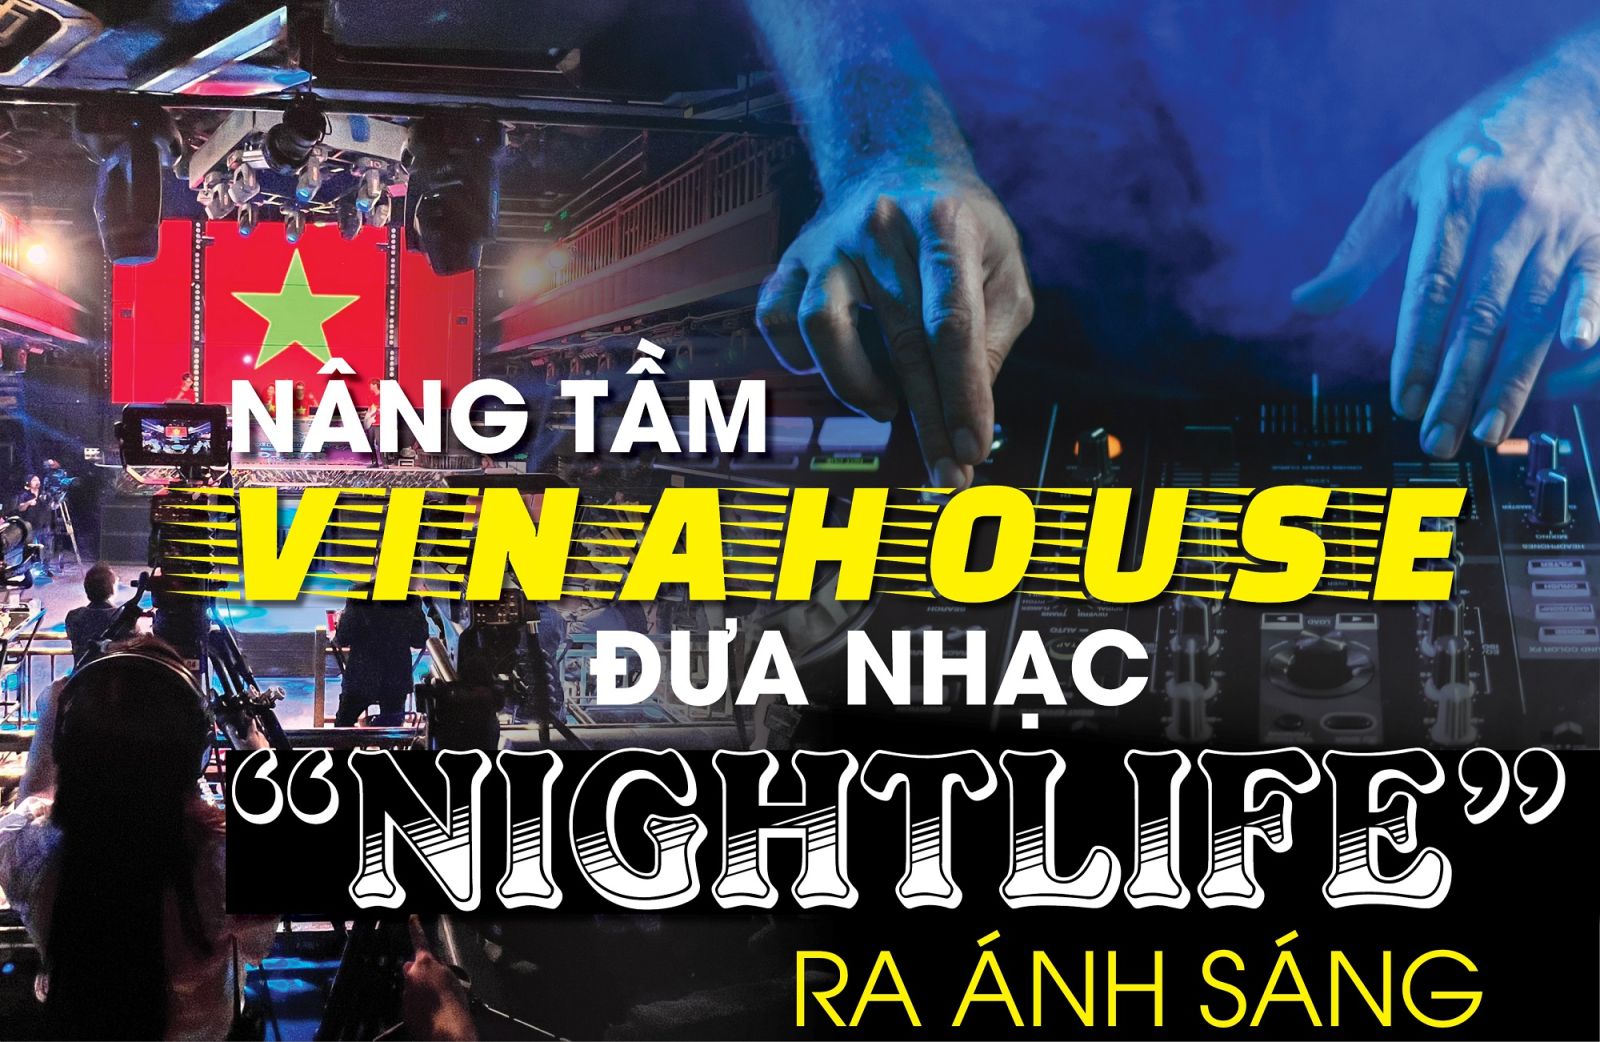 Nâng tầm Vinahouse, đưa nhạc "nightlife" ra ánh sáng